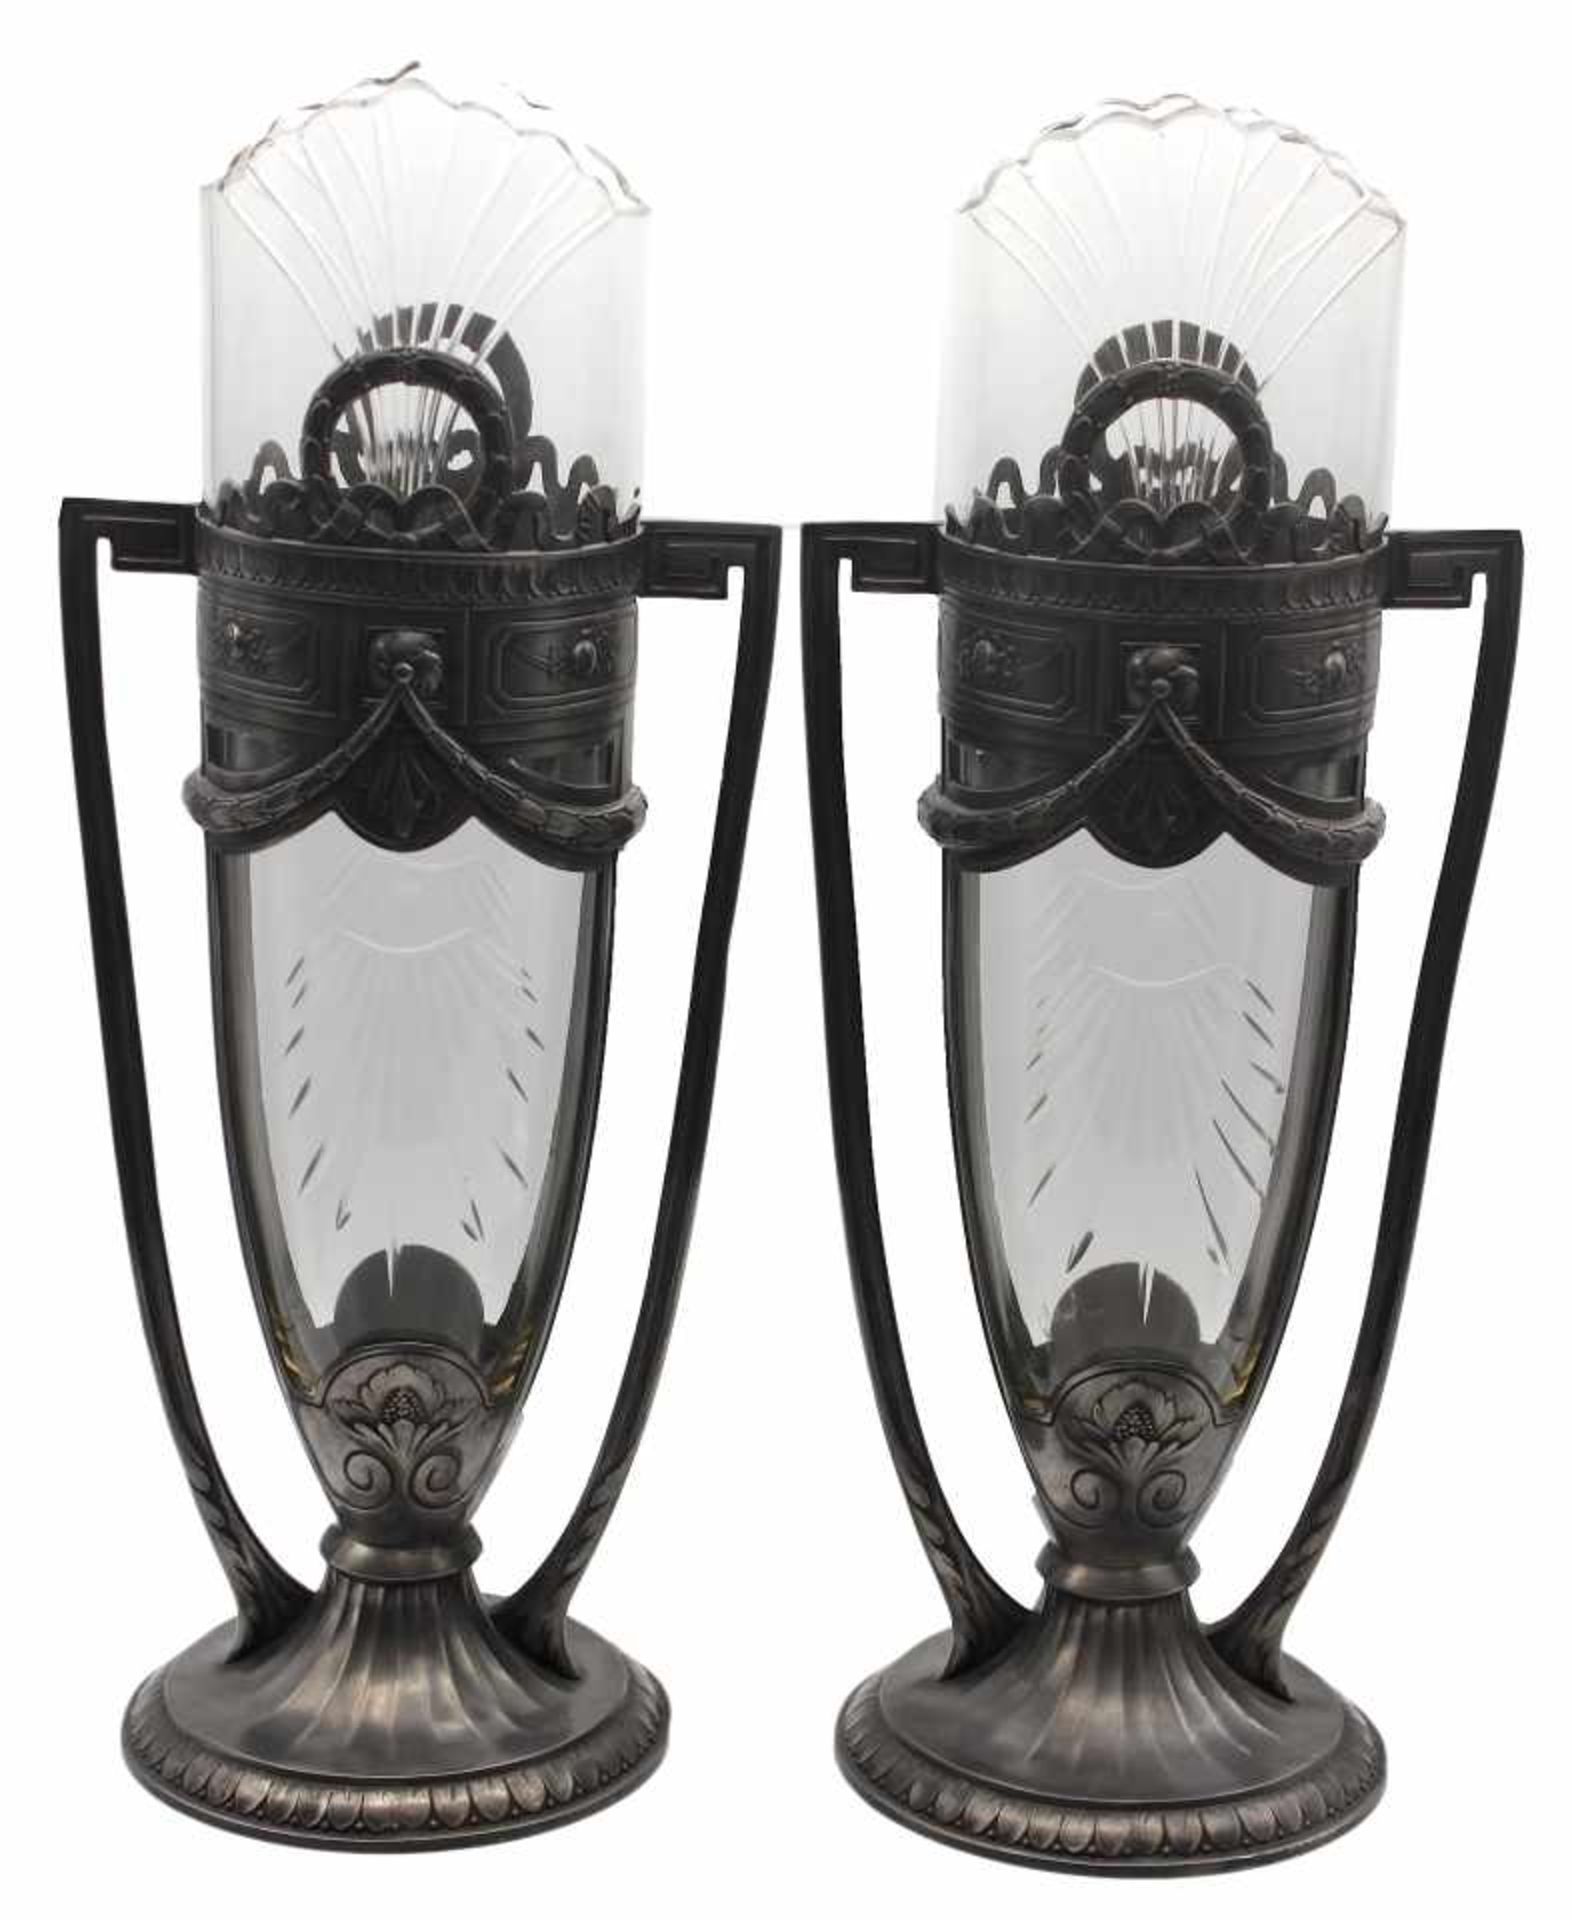 Paar Vasen - in der Art des Jugendstils Zinn, unleserlich gemarkt, Nr. 4513, farbloser Glaseinsatz